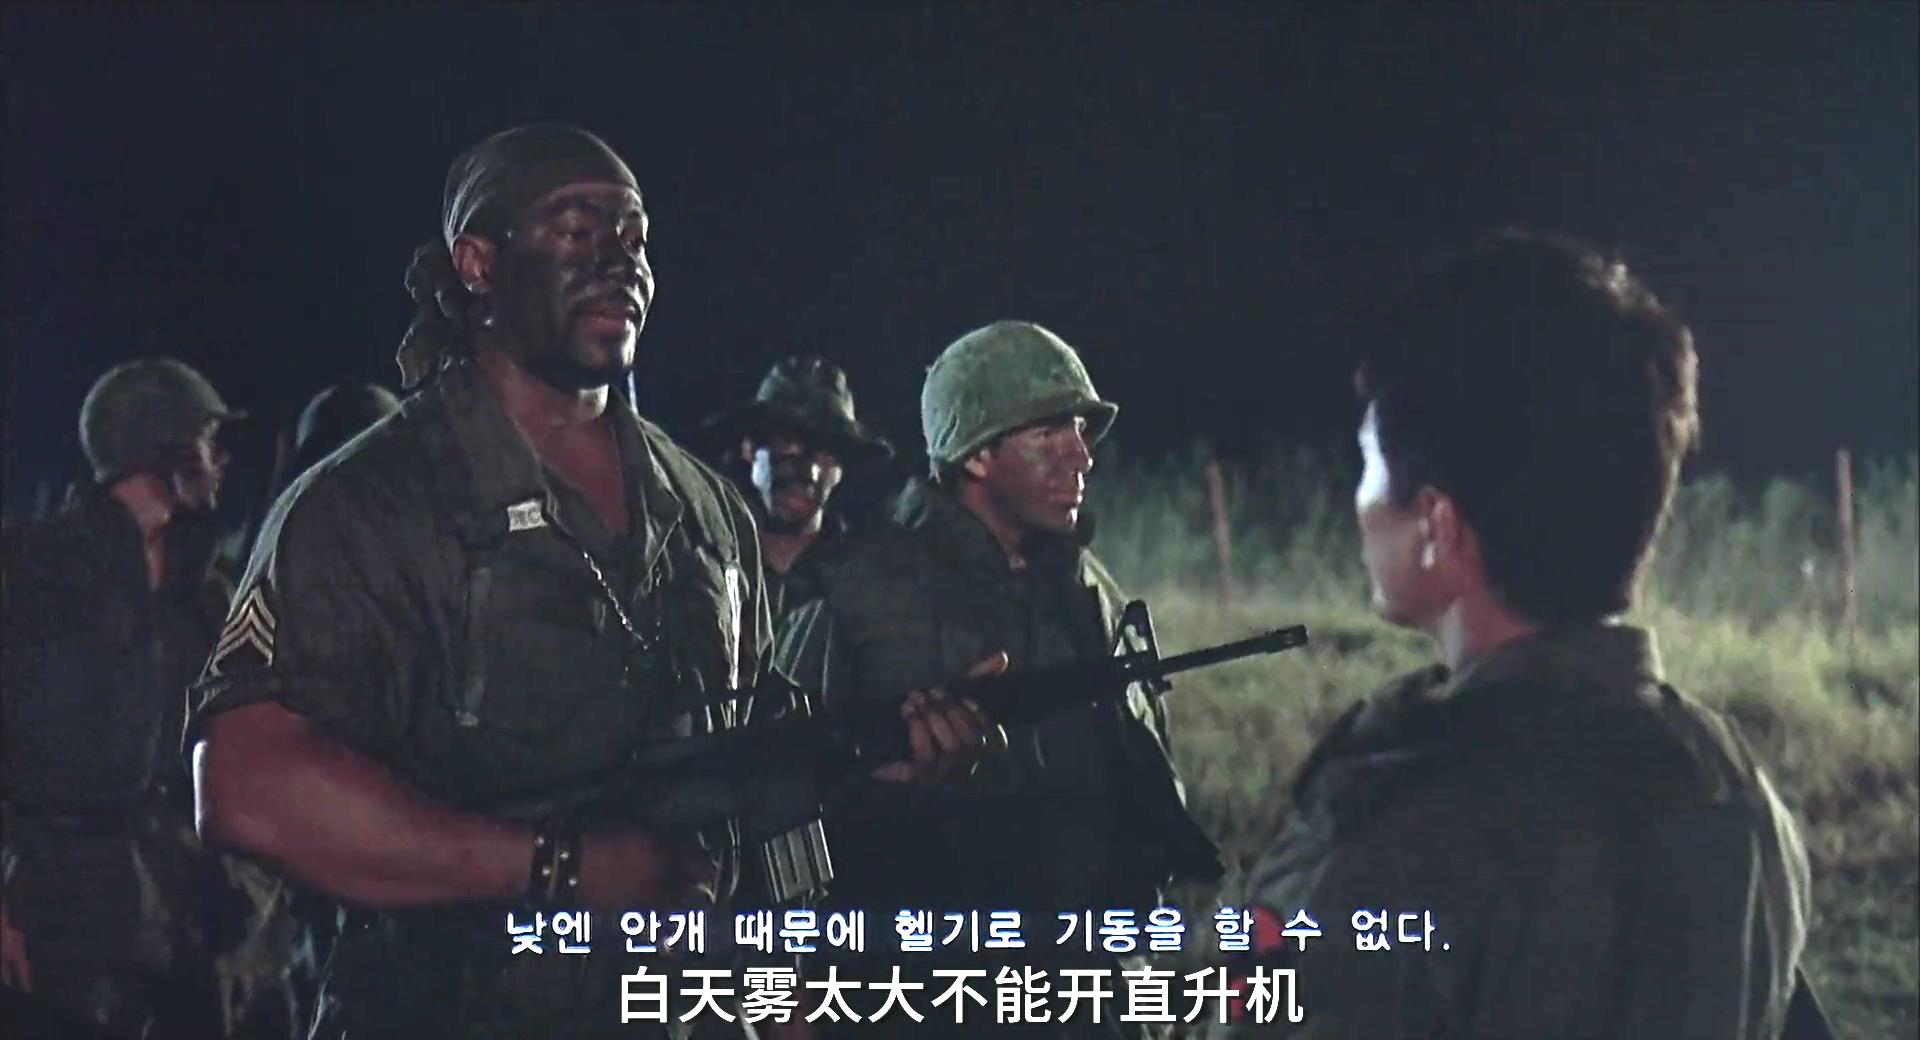 9人小队执行任务，照片却有10个士兵！详解韩国恐怖电影《R高地》